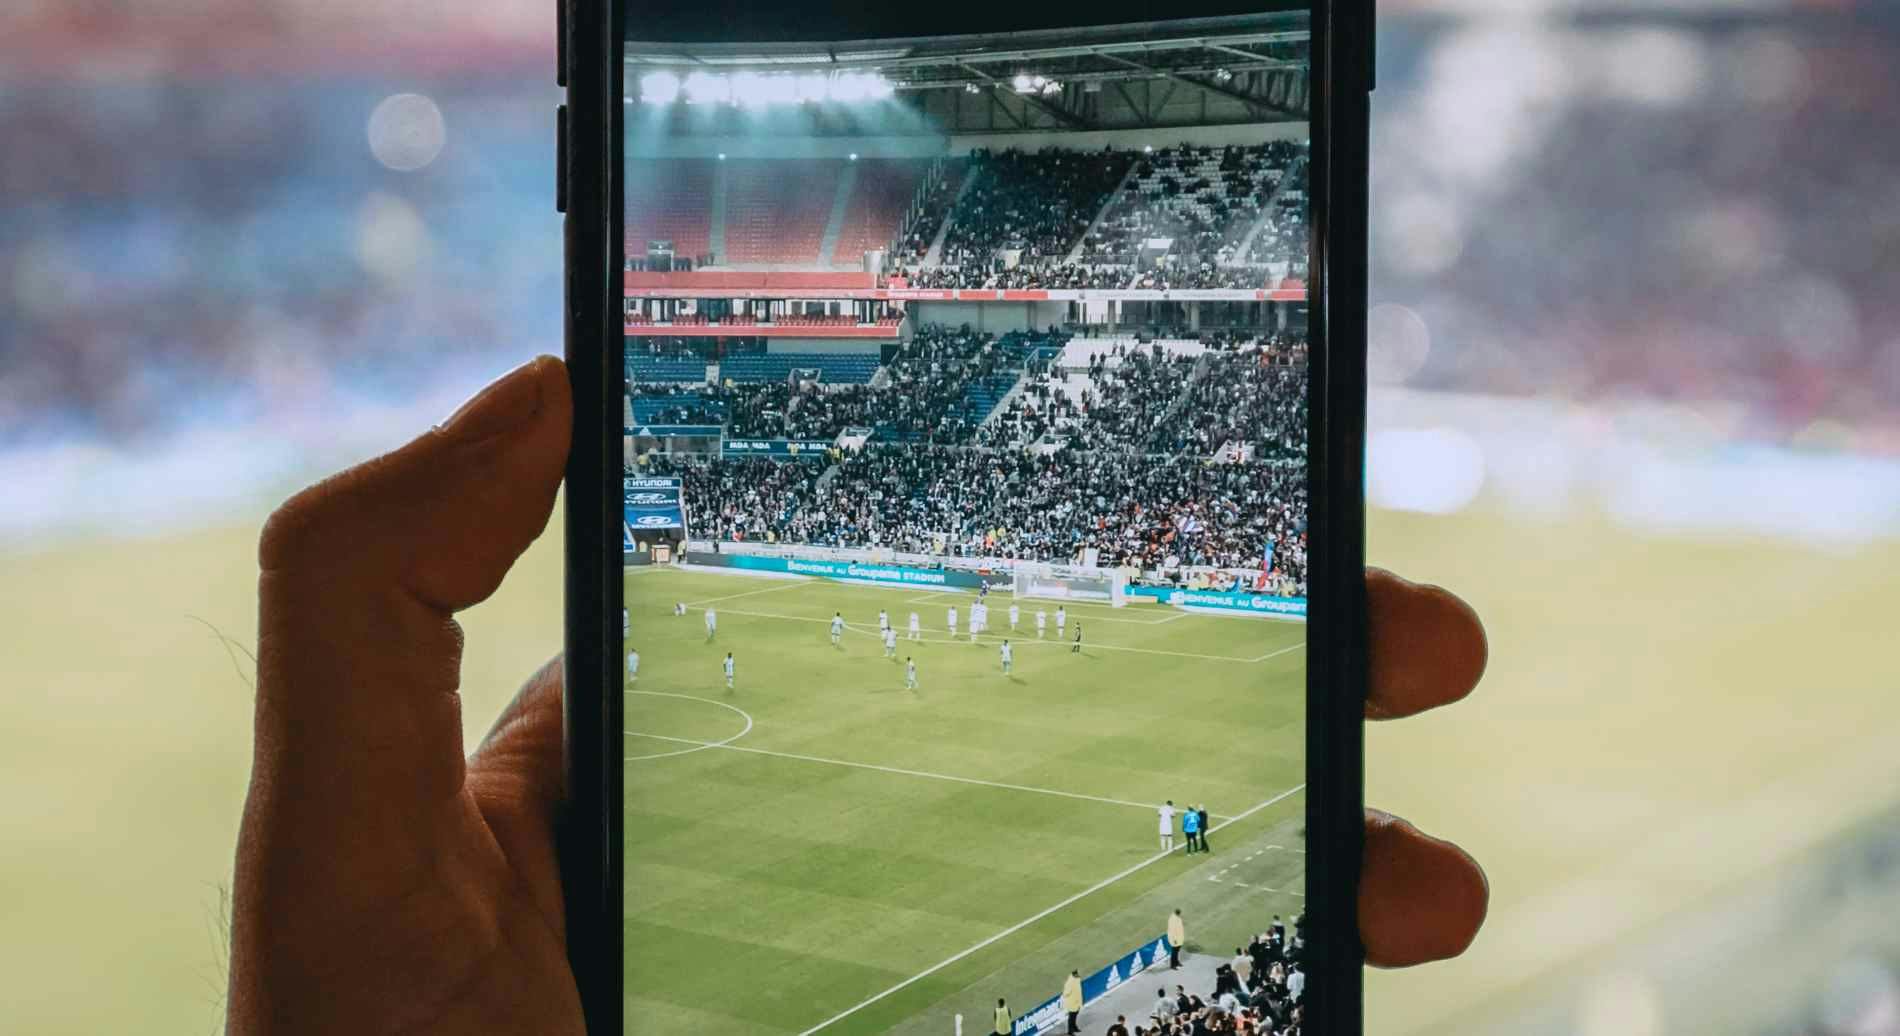 Imagem de uma pessoa filmando um estádio em um jogo de futebol